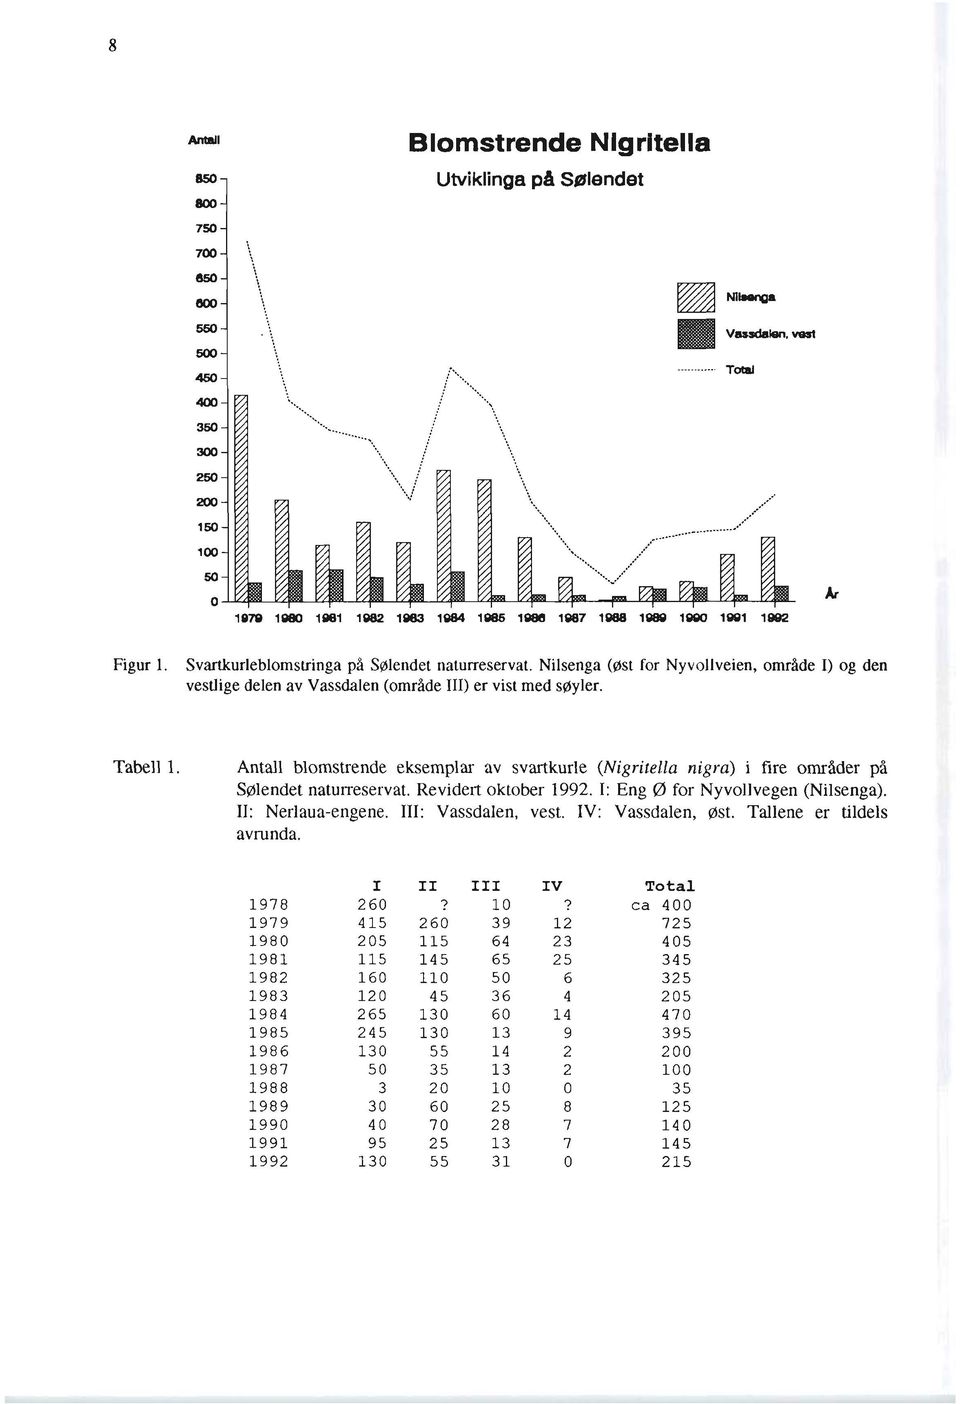 Antall blomstrende eksemplar av svartkurle (Nigritella nigra) i fire områder på SØlendet naturreservat. Revidert oktober 1992.